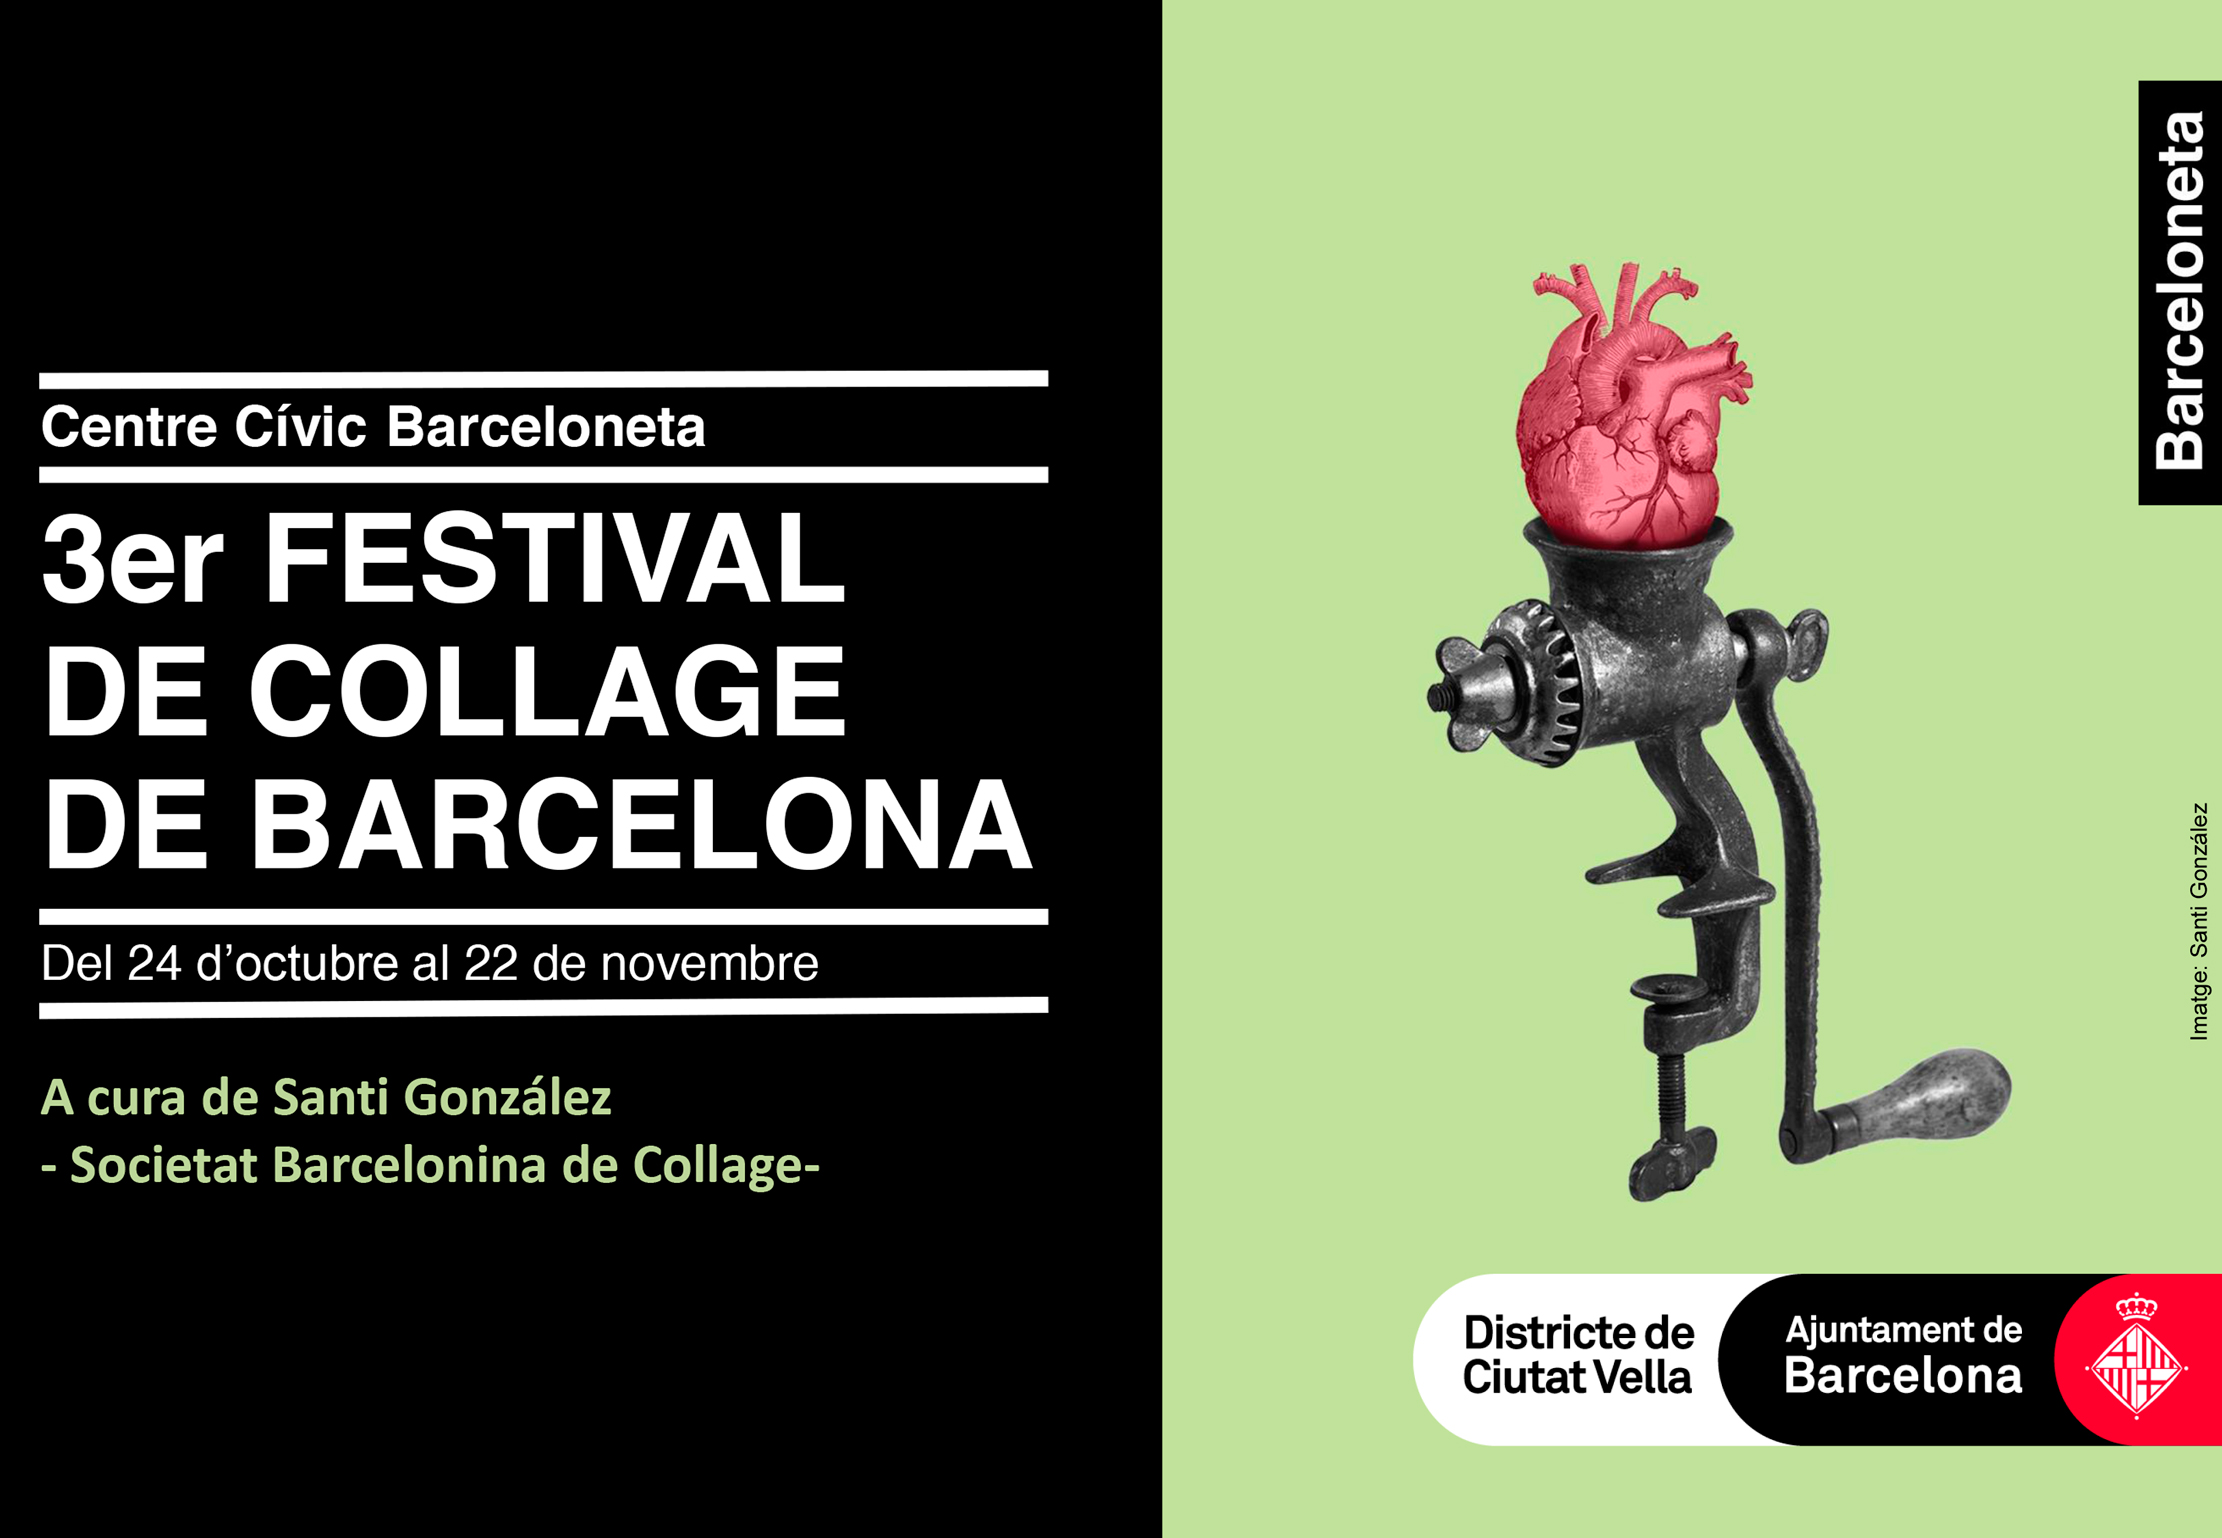 arte urbano festival collage barcelona